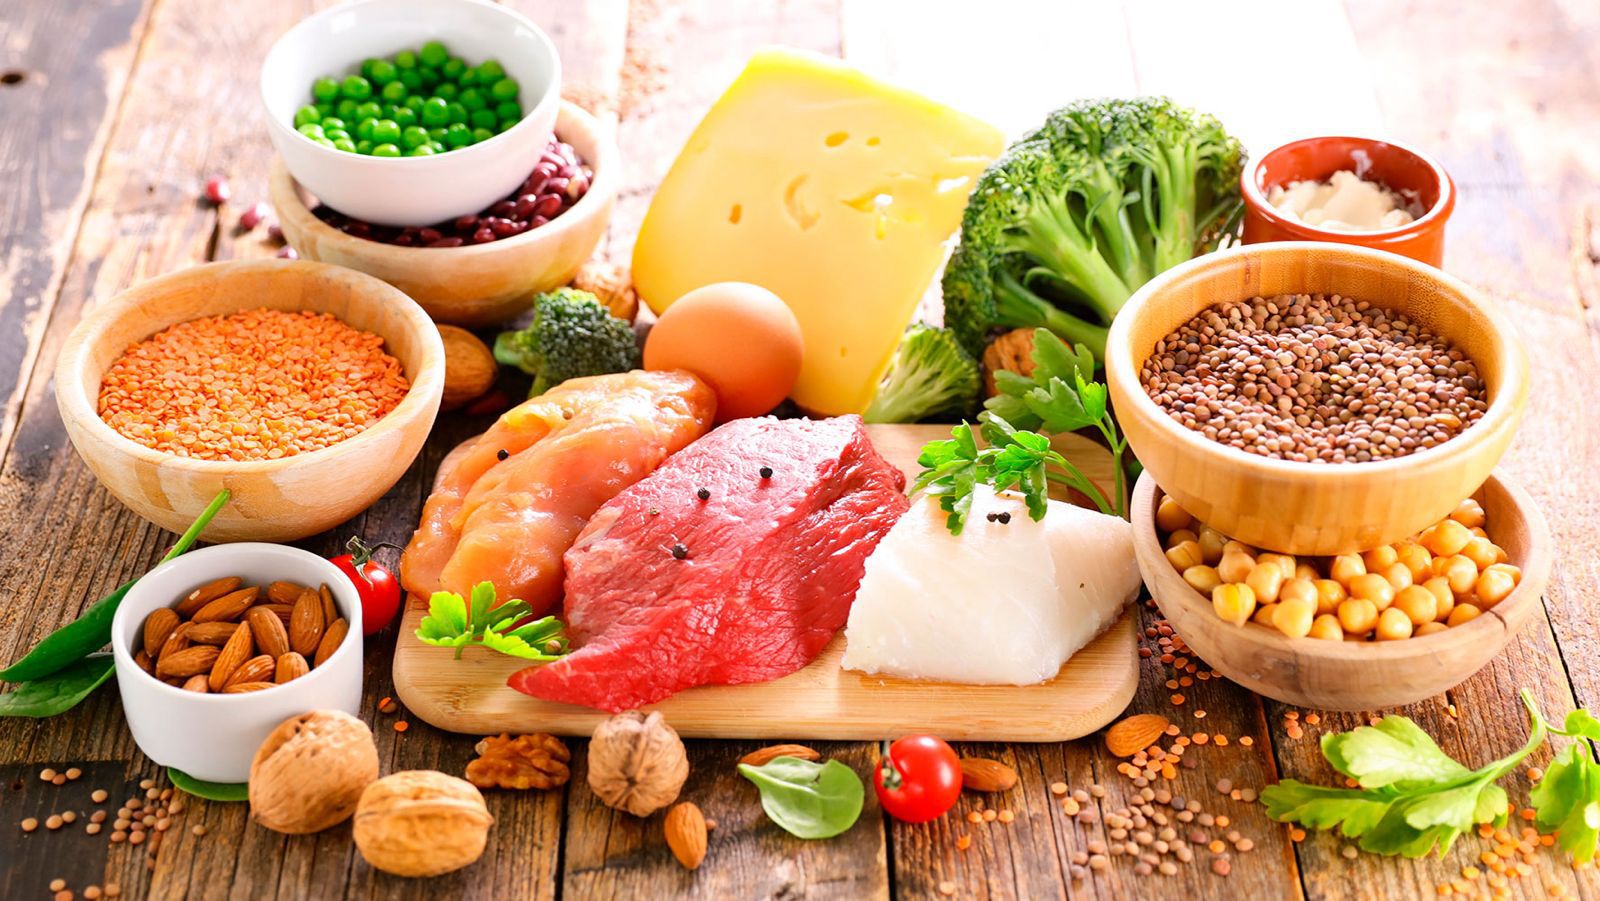 La proteína, en mayores cantidades, se encuentra en alimentos de origen animal como el pollo, la carne roja, la leche y el huevo; sin embargo, también es posible encontrarla en semillas y verduras. (Shutterstock)